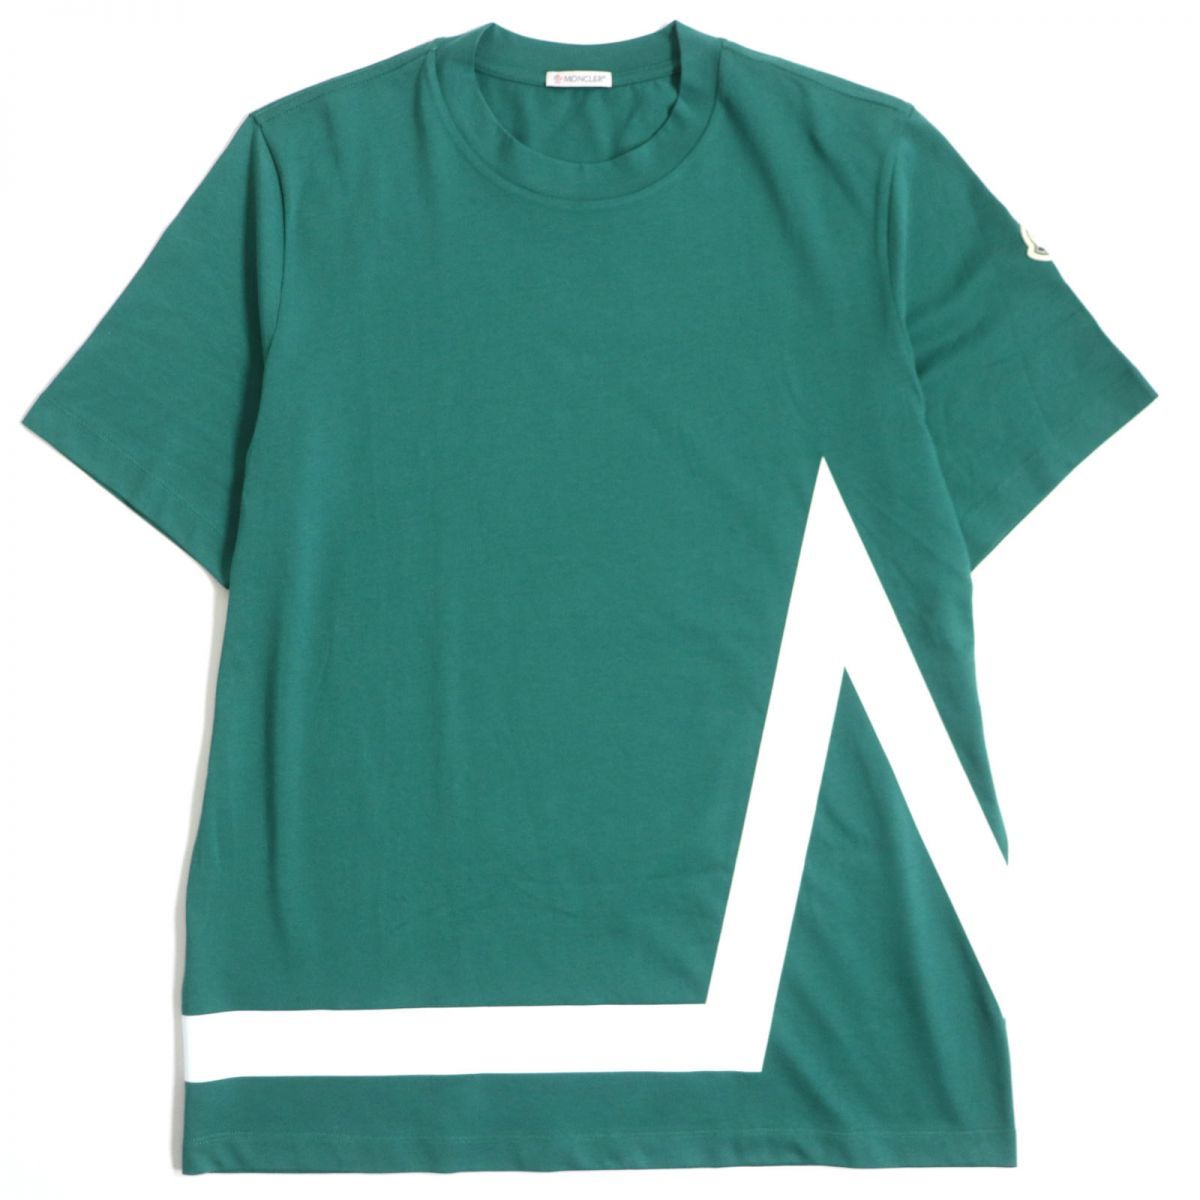 未使用品▽21SS MONCLER モンクレール Mモチーフ クルーネック コットン100%% 半袖Tシャツ グリーン×ホワイト M メンズ 正規品  タグ付き